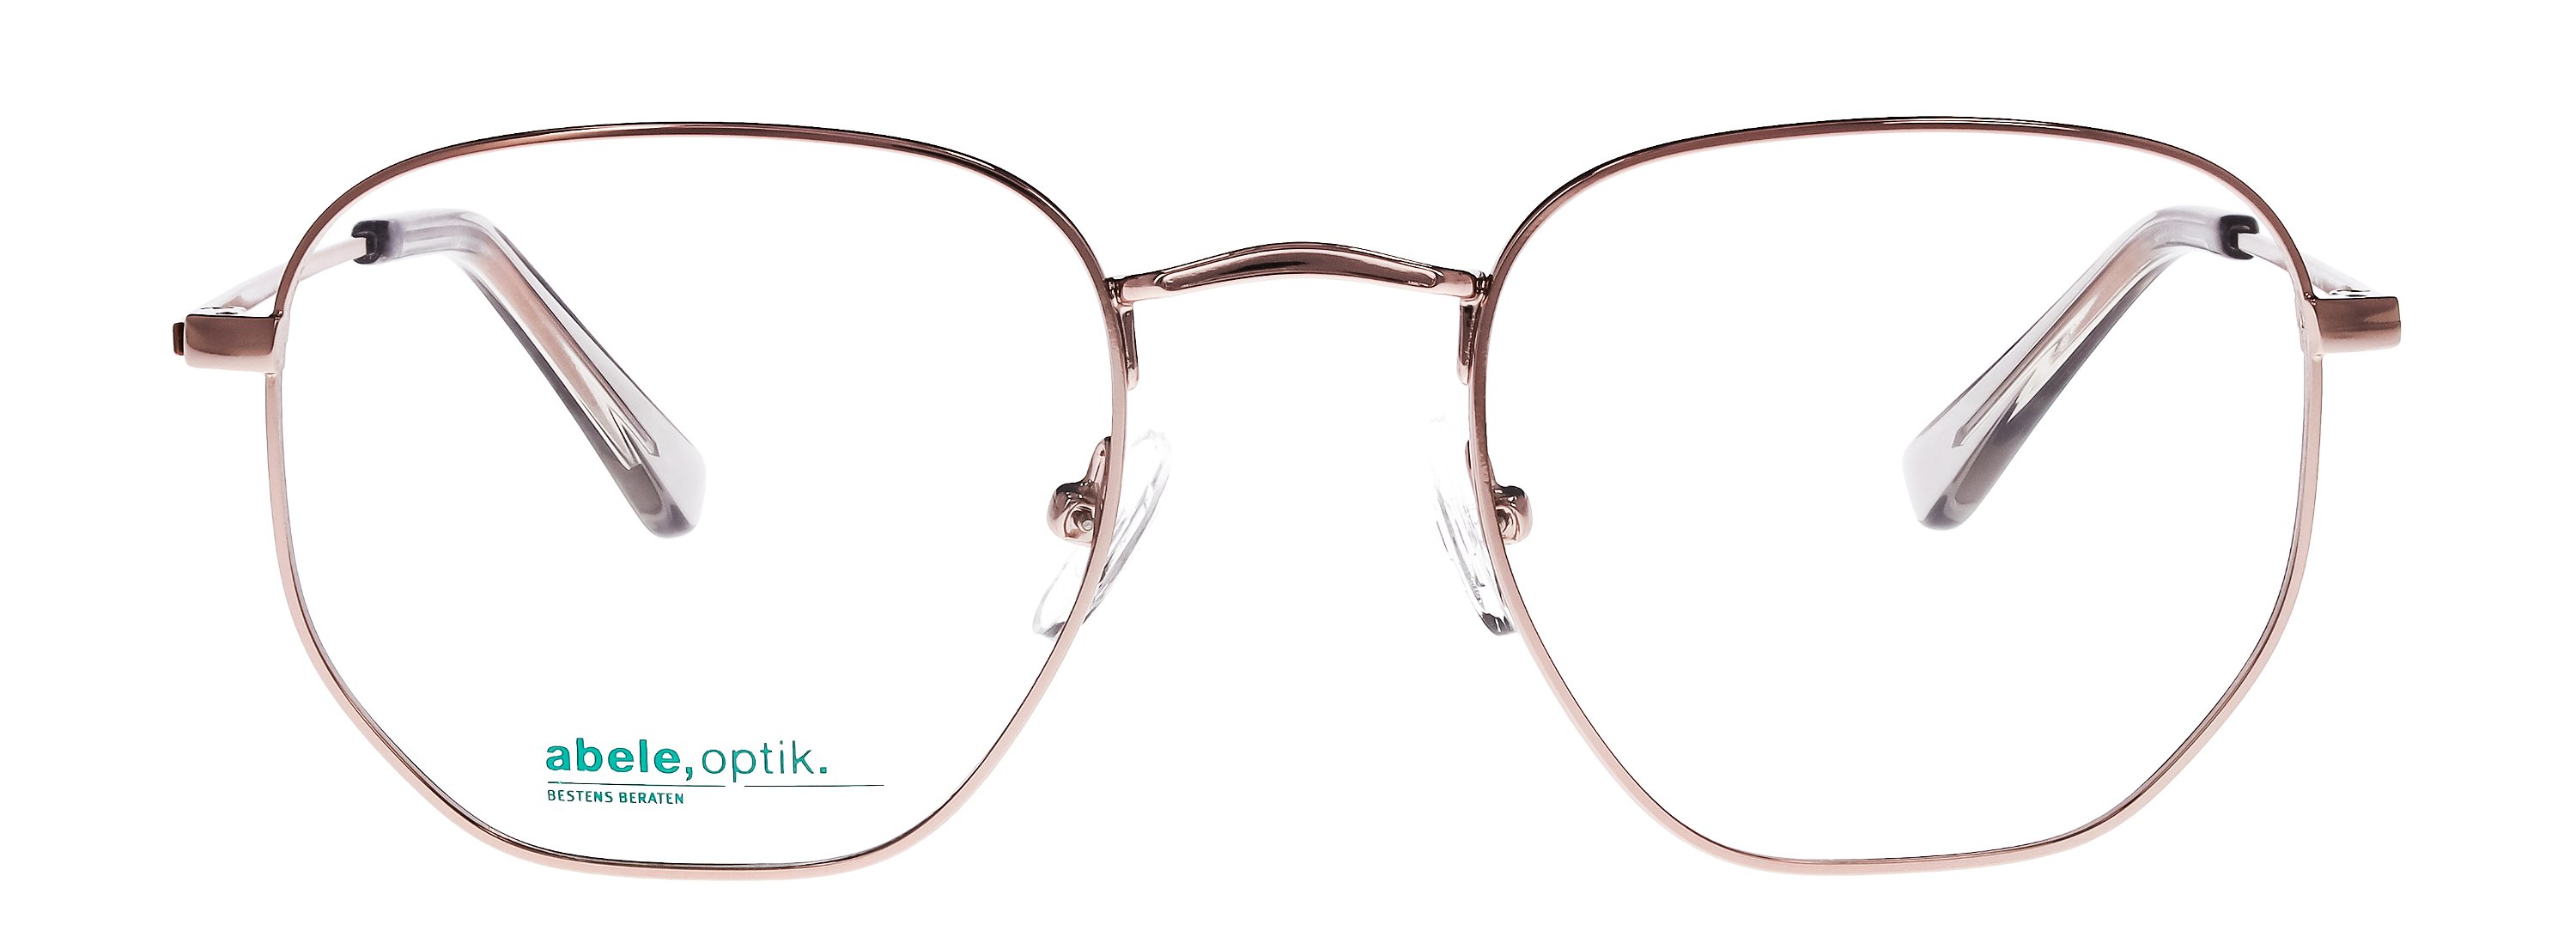 Das Bild zeigt die Korrektionsbrille 148571 von der Marke Abele Optik in rosé-weiß.